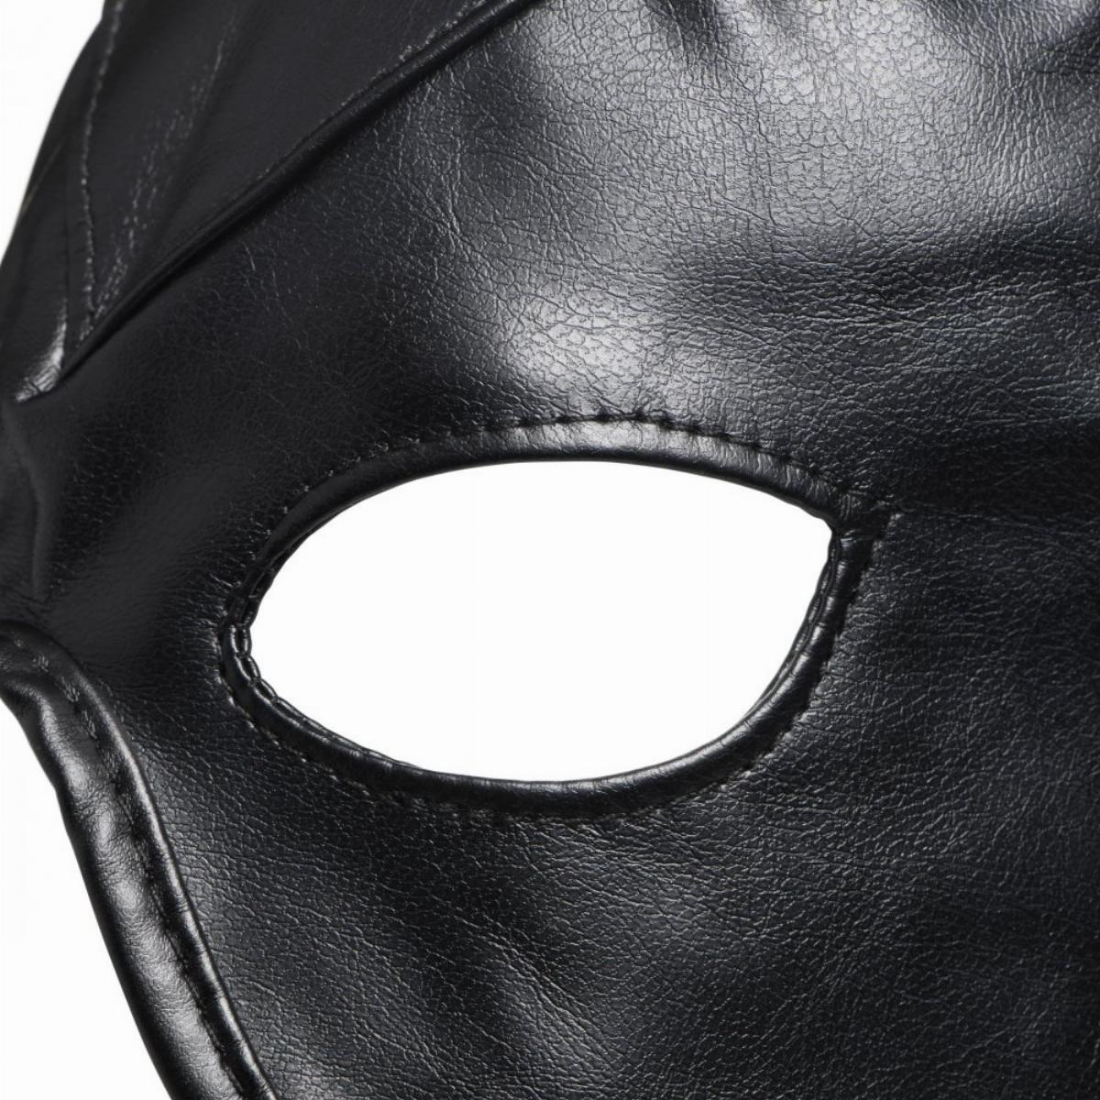 Zwart Dungeon Demon Bondage Masker Met Hoorns van Master Series. Perfect voor gay mannen en te koop bij Flavourez.